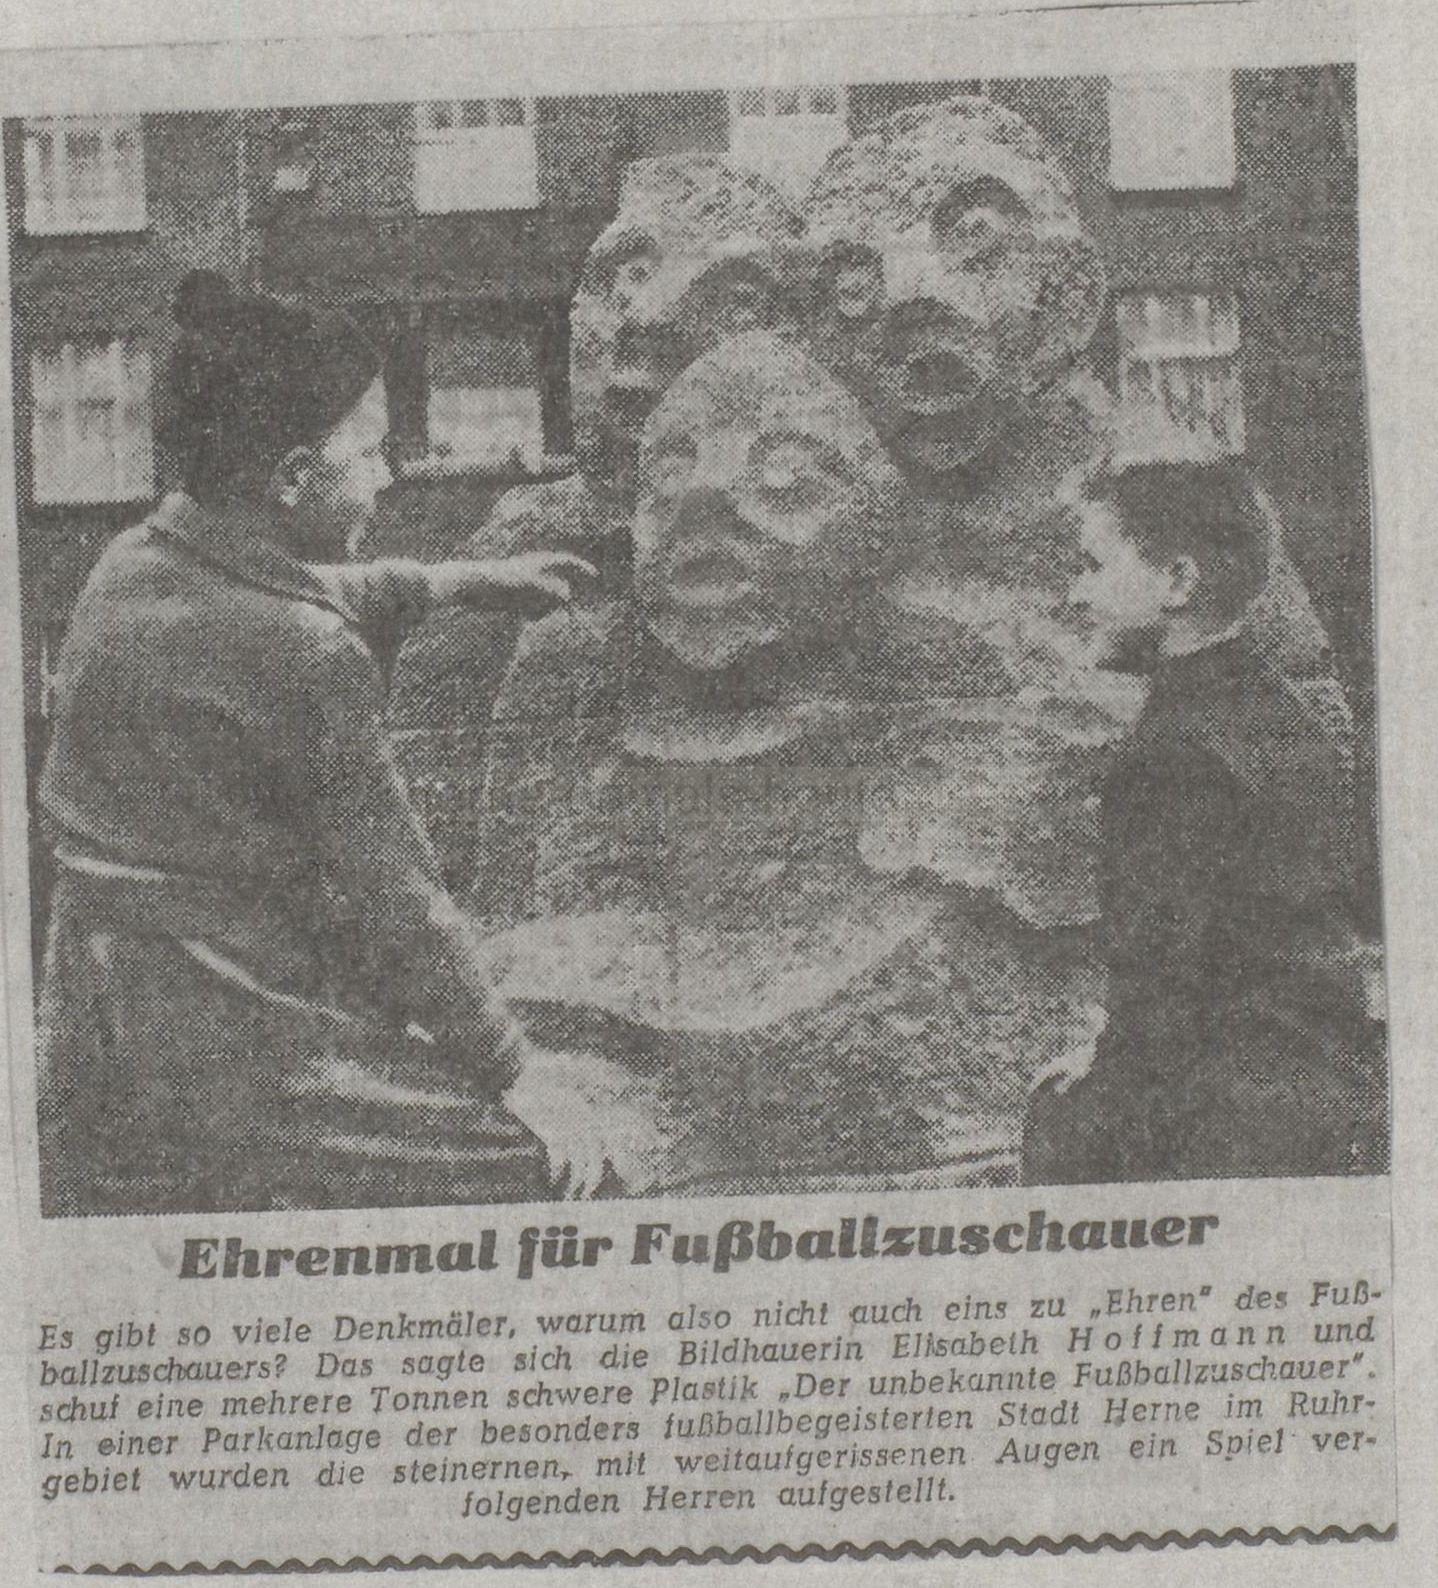 Westfälische Rundschau, Westfalenteil vom 24./25.01.1959, Repro Stadtarchiv Herne